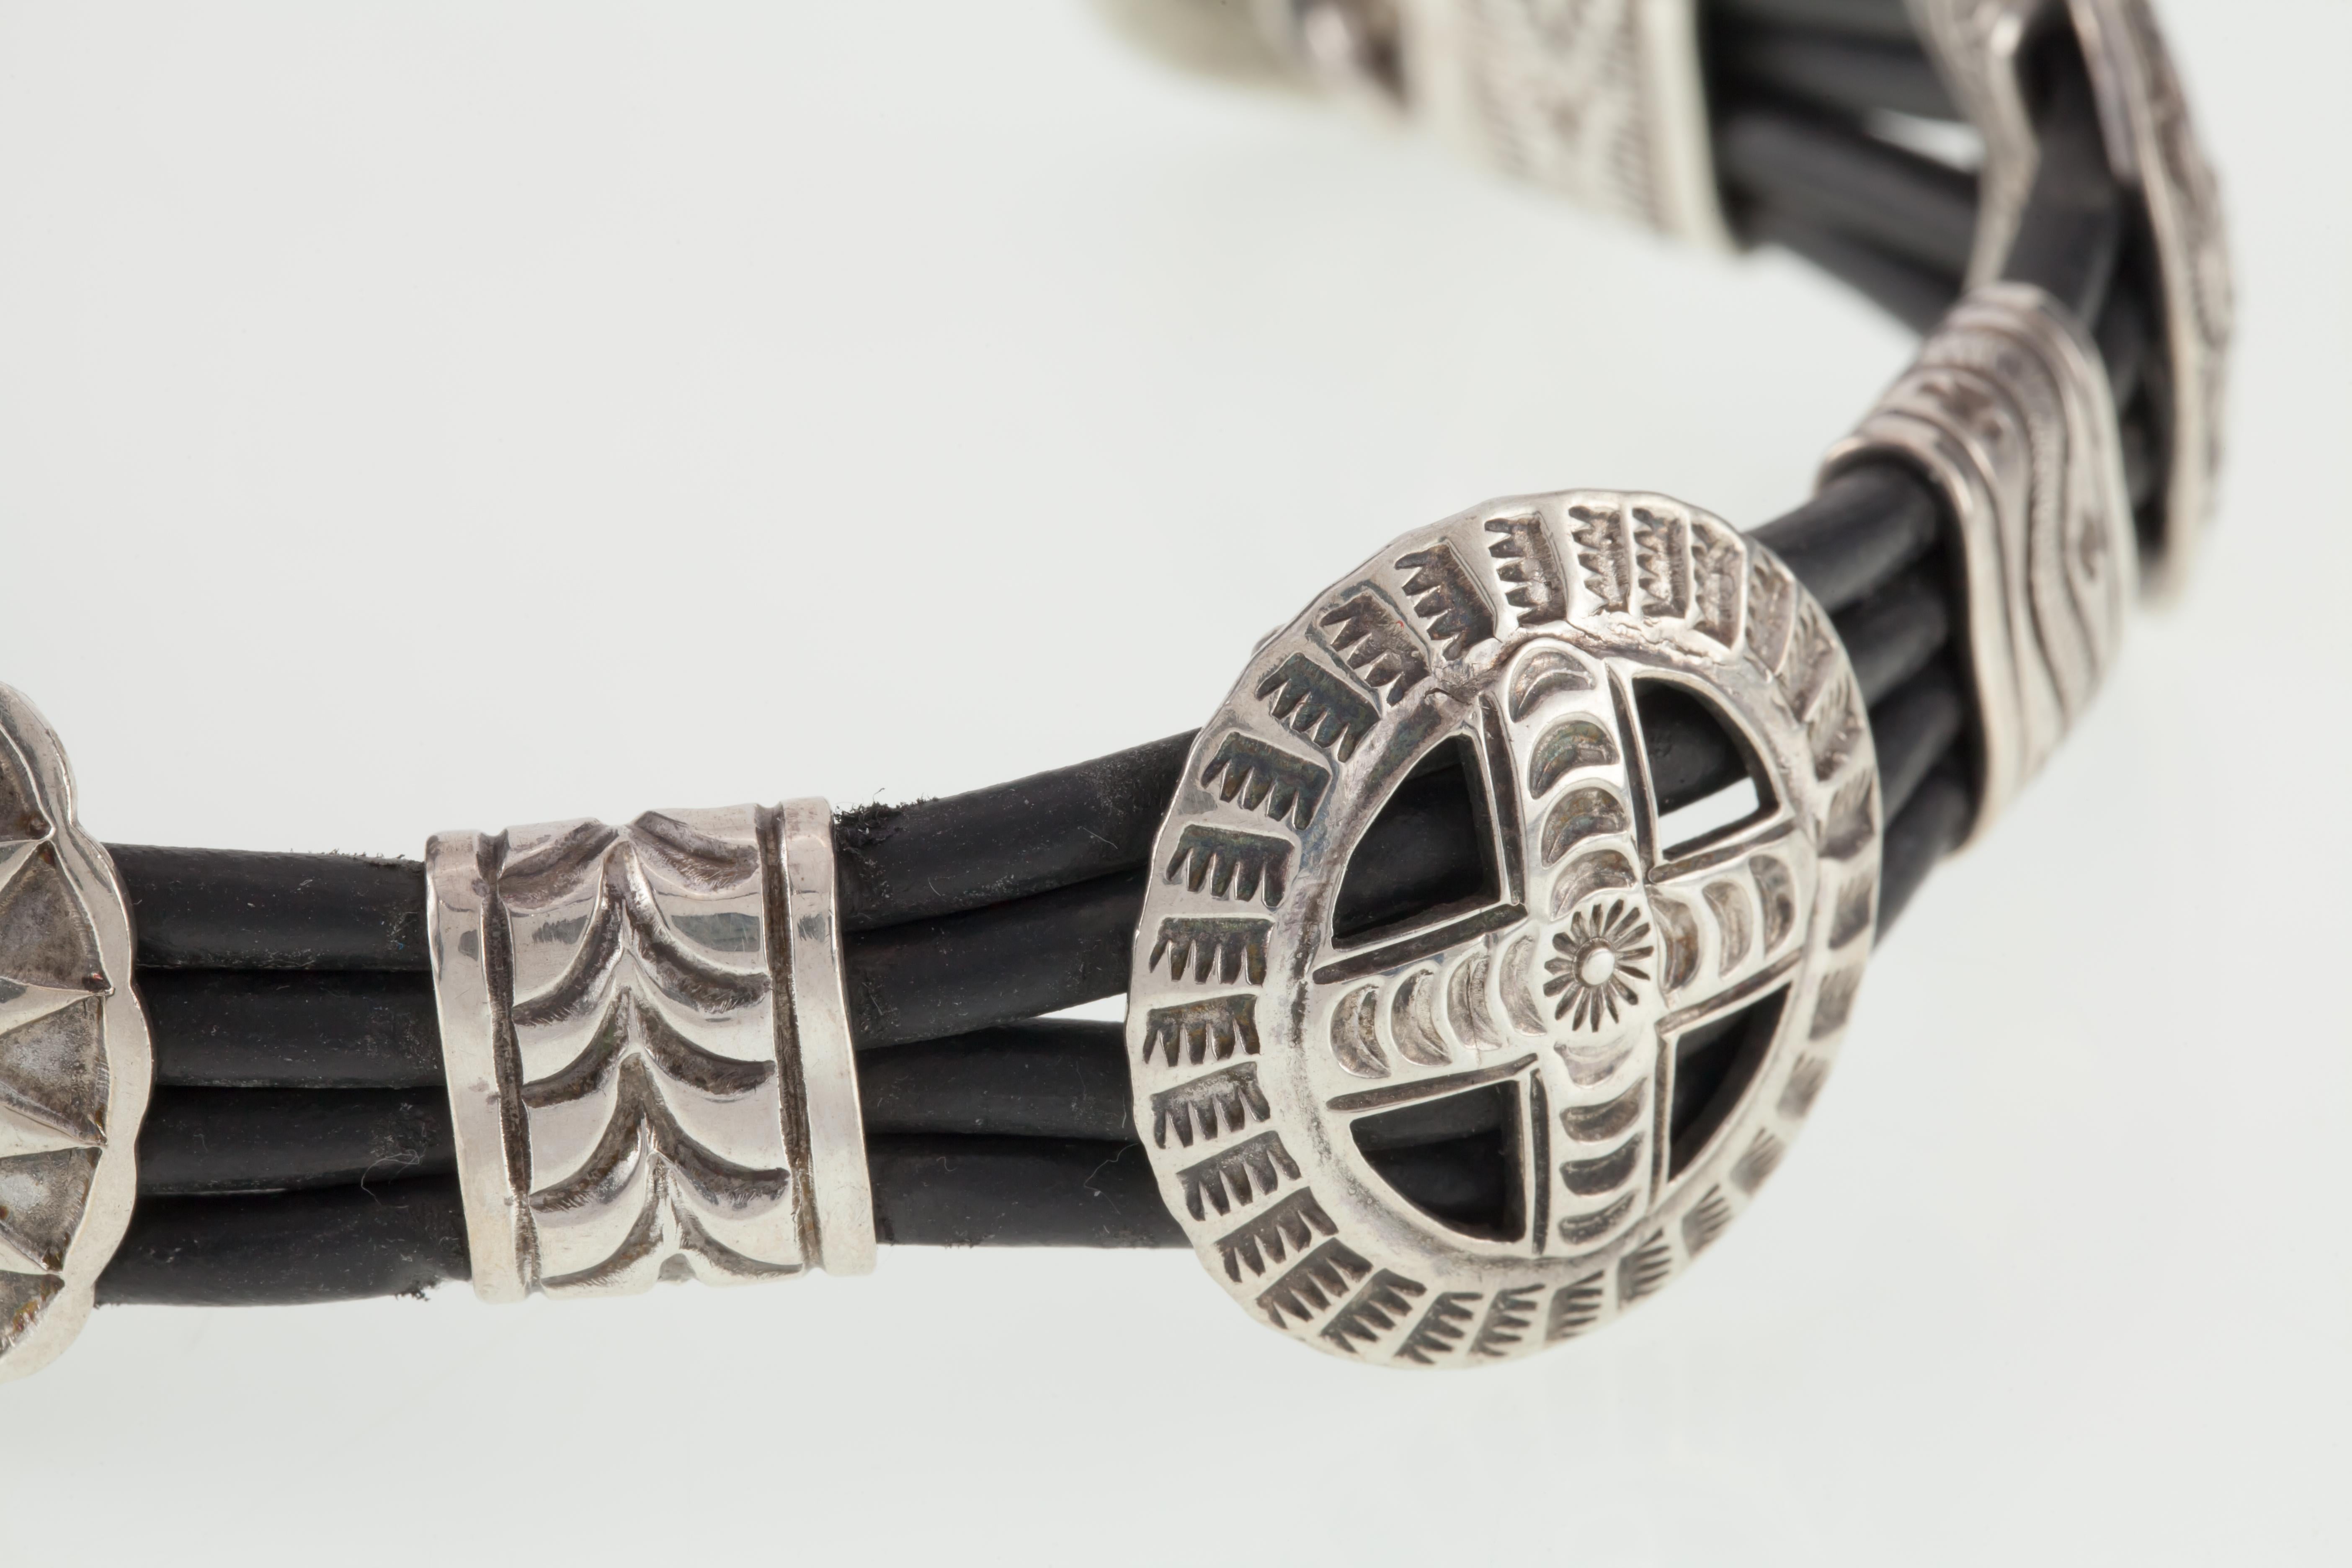 Wunderschönes Navajo Sterling & Lederarmband
Mit Handstempel-Design-Sonnenkreuz 
Breite des Armbands = 25 mm
Gesamtlänge = 7,25